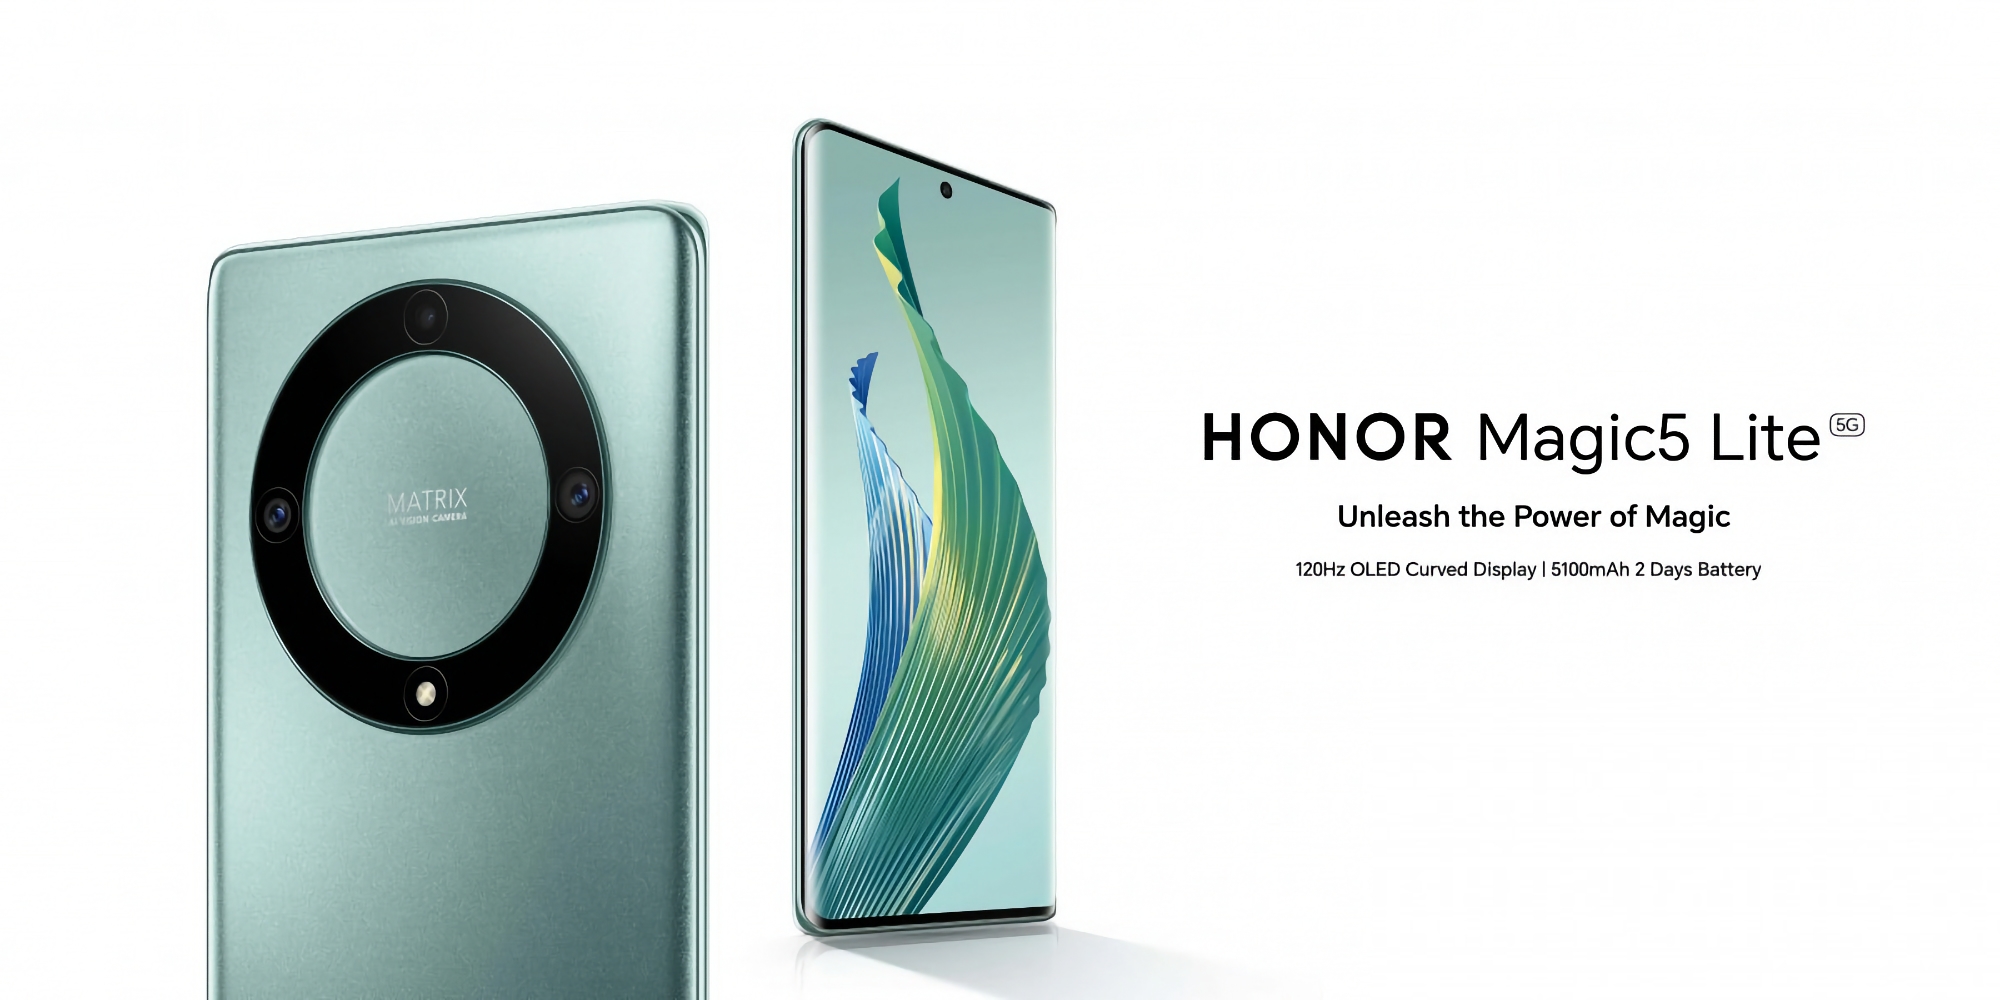 Le Honor Magic 5 Lite fait ses débuts en Europe : écran AMOLED 120 Hz, puce Snapdragon 695 et batterie 5100 mAh pour 379 €.